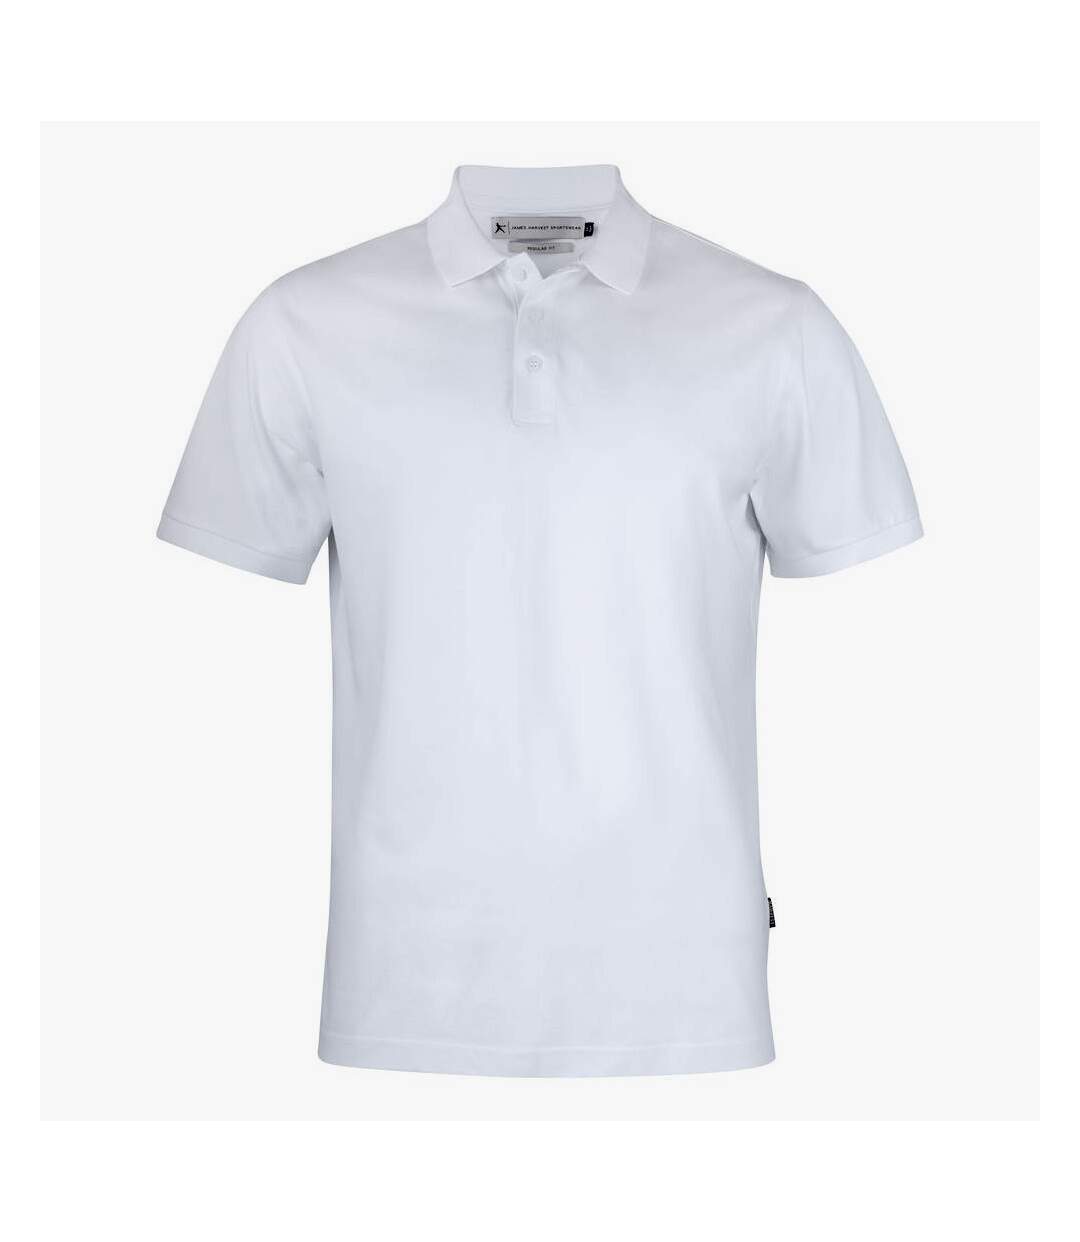 James Harvest Mens Sunset Polo Shirt (White)